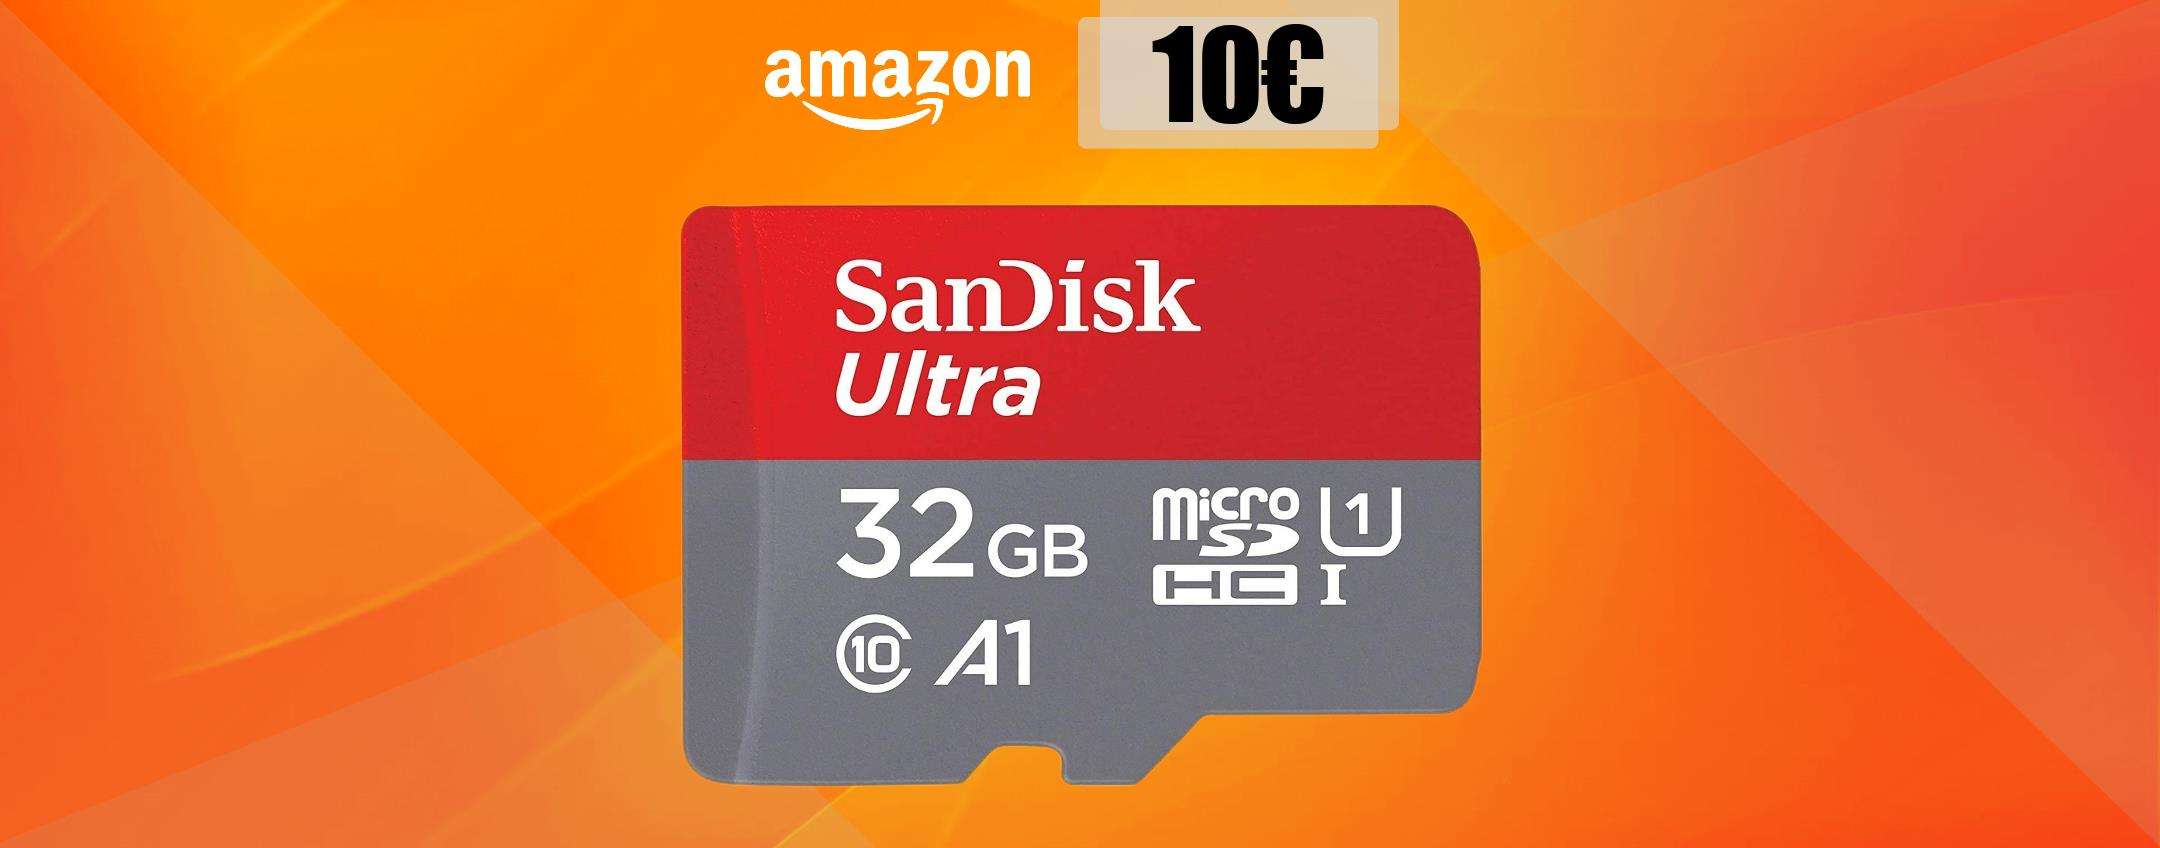 MicroSD Sandisk 32GB, resistente e SUPER VELOCE: tua con appena 10€